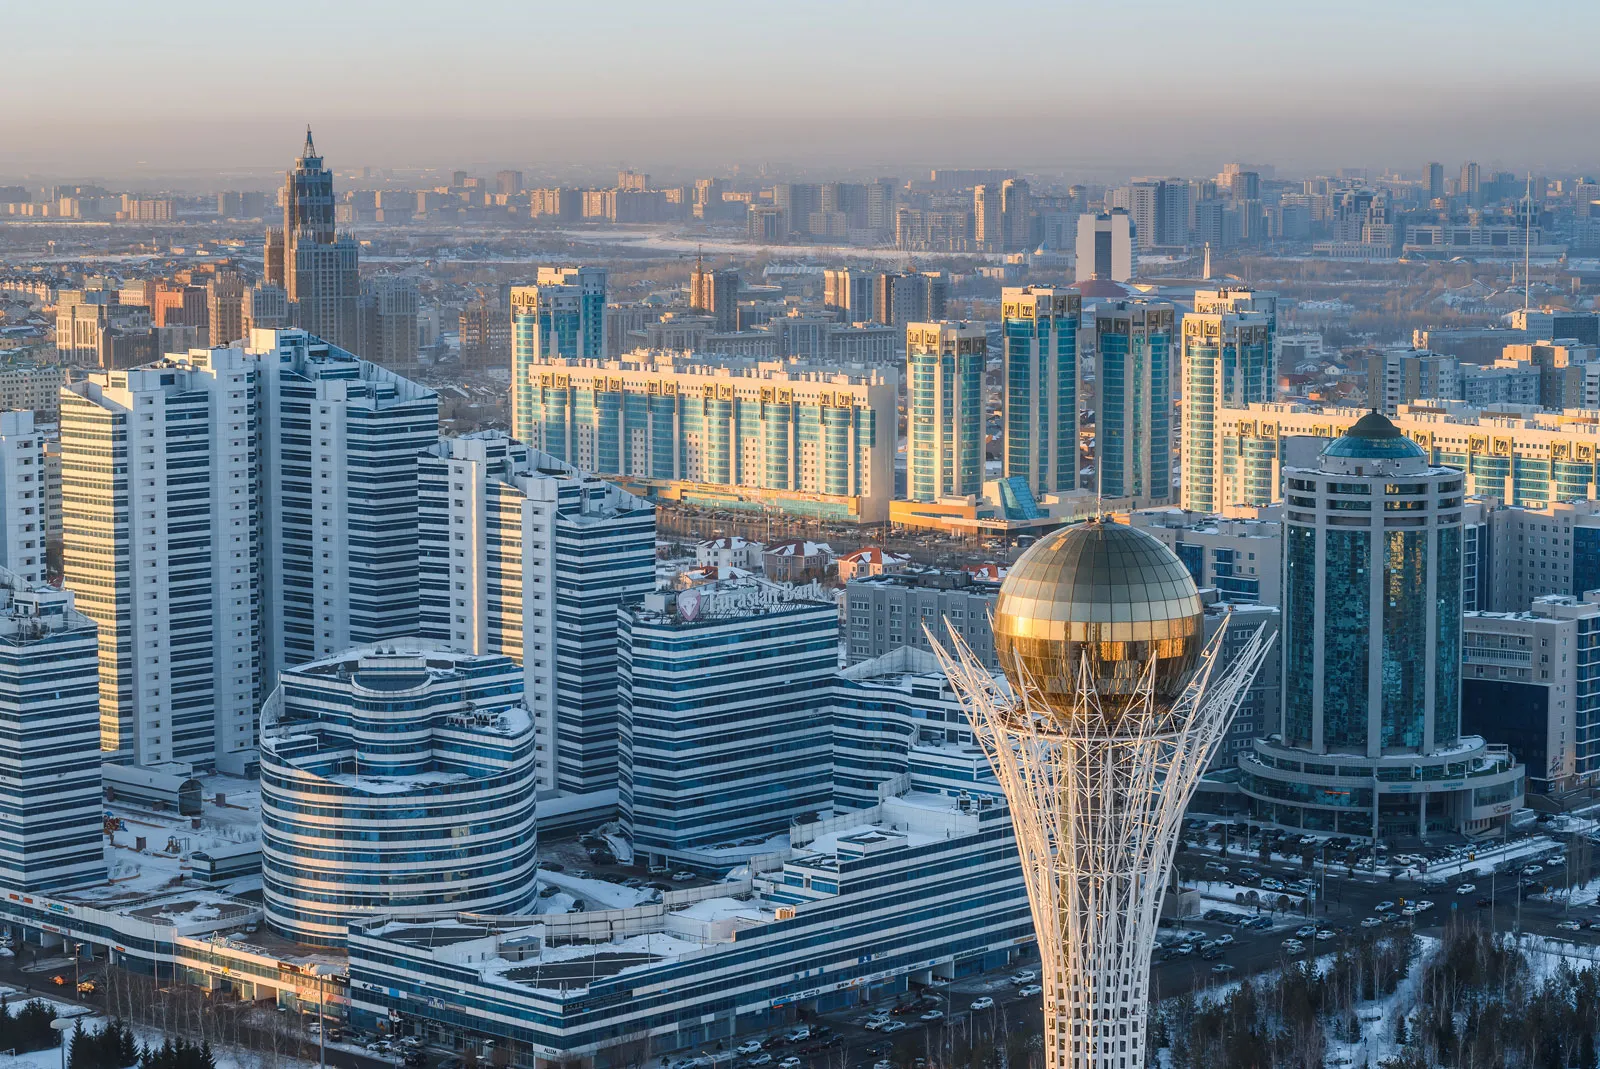 7 удивительных фактов из Казахстана
Астана